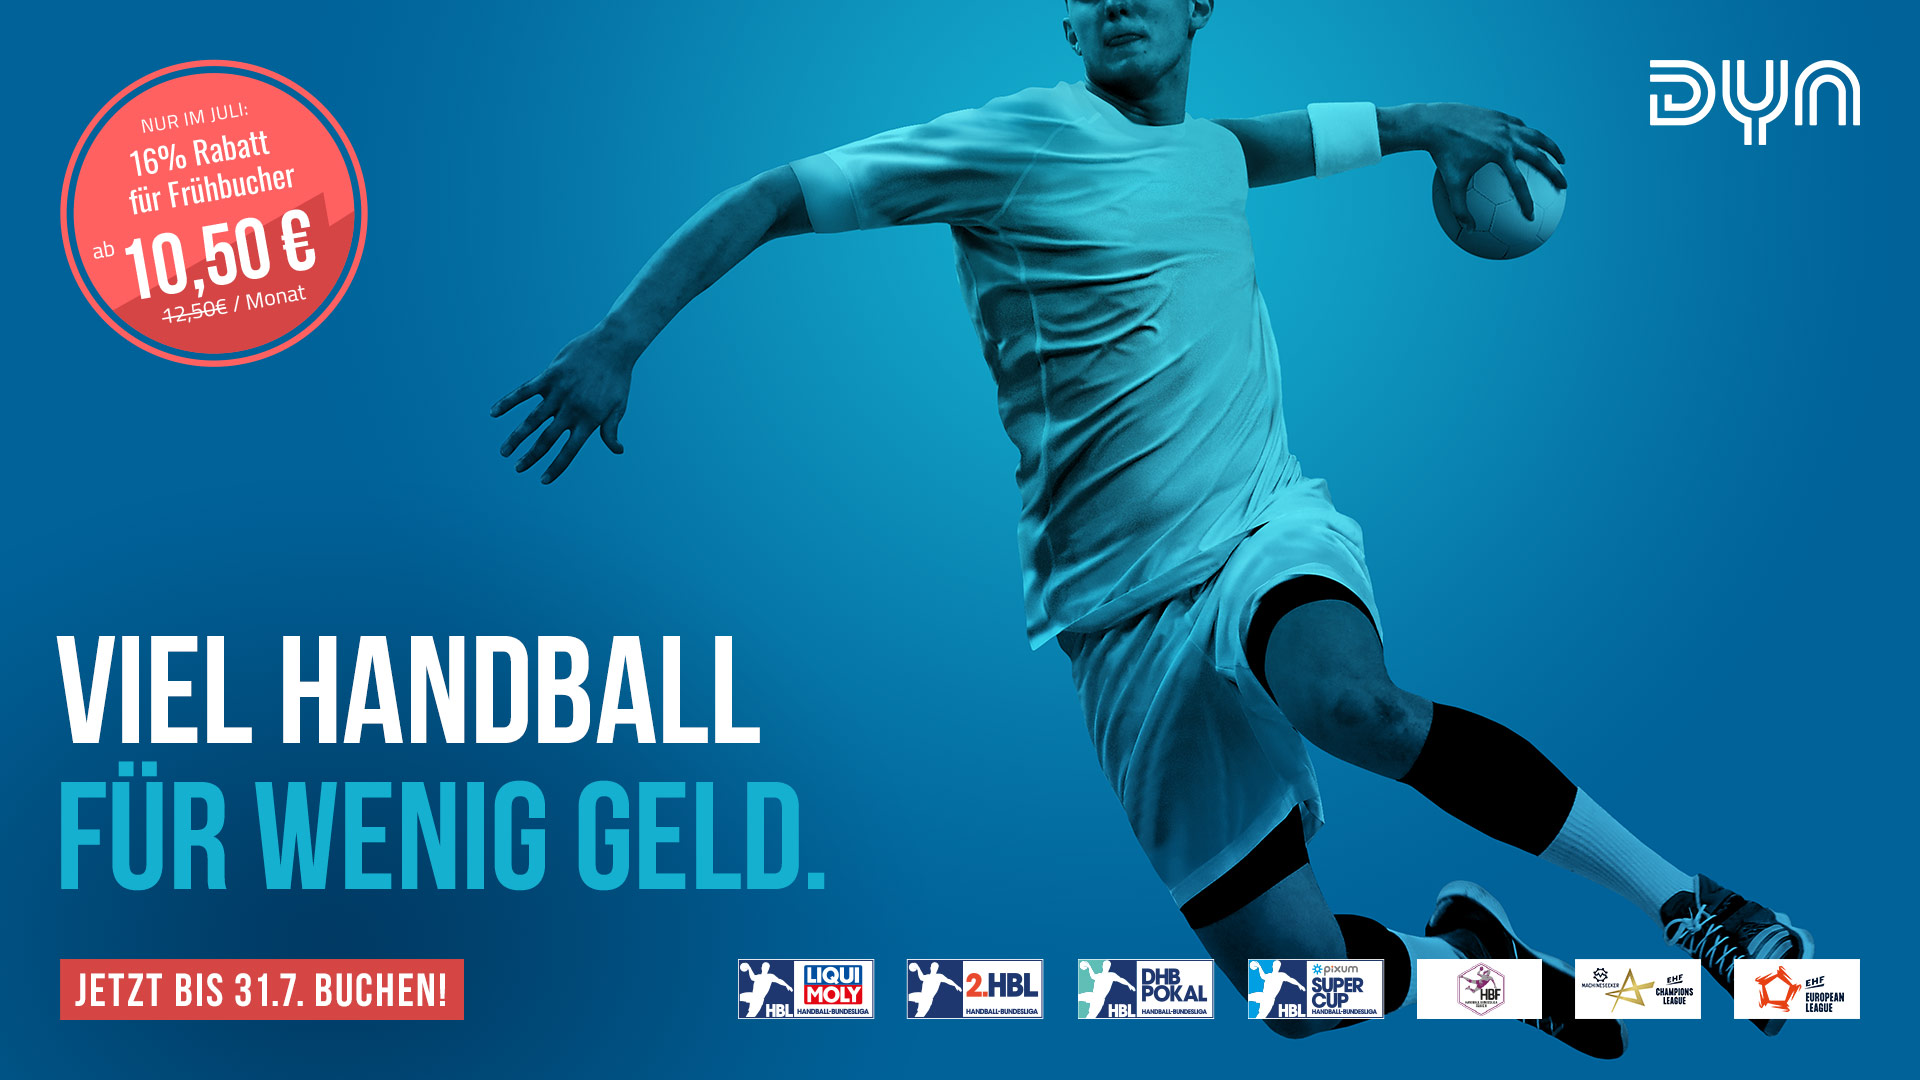 free tv handball